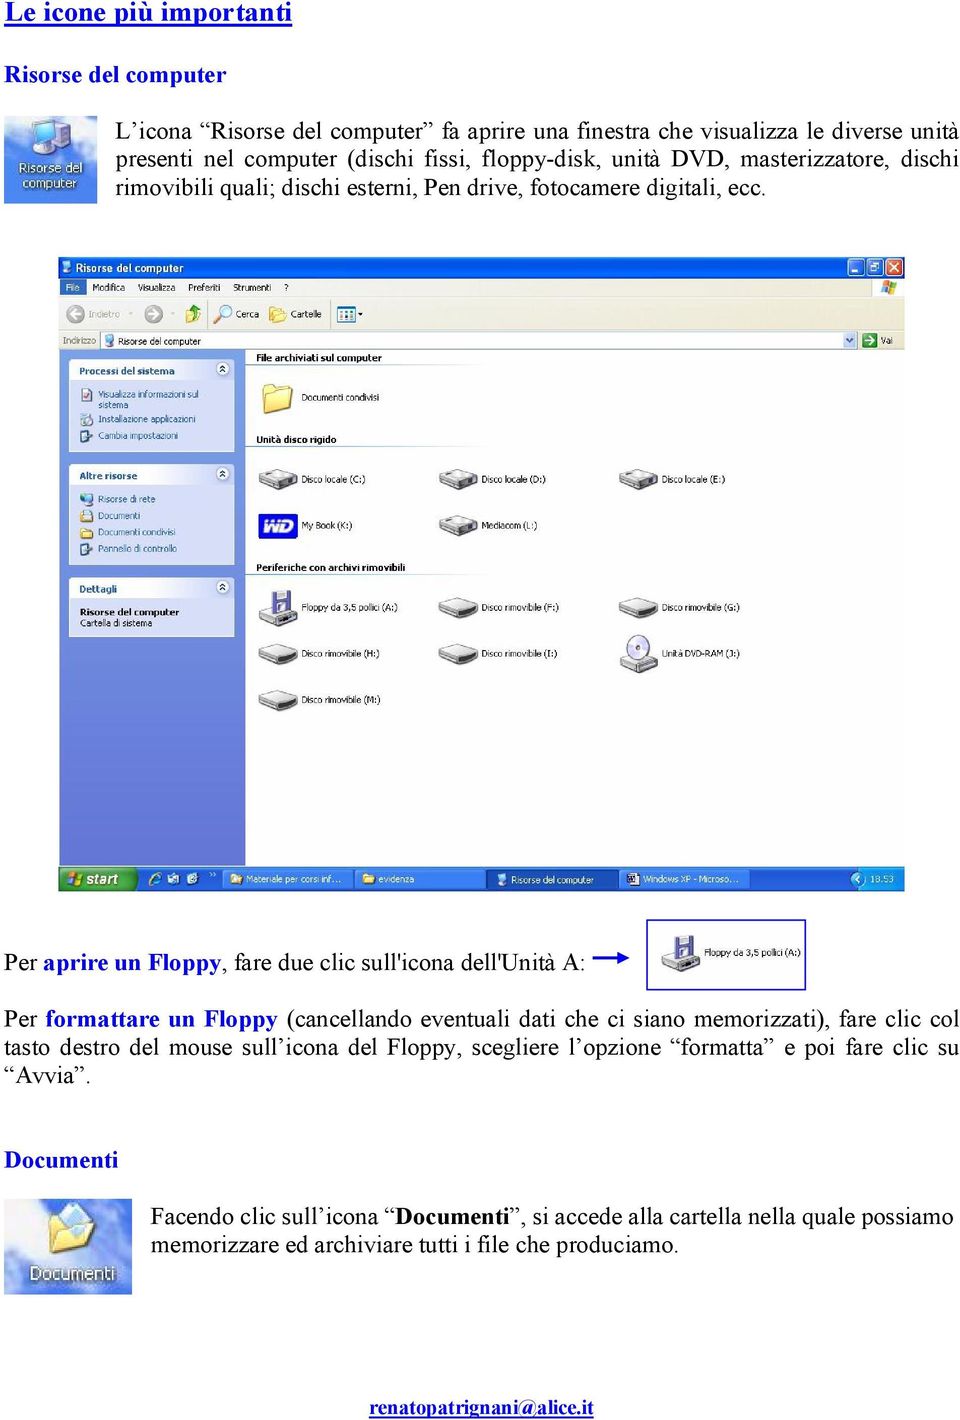 Per aprire un Floppy, fare due clic sull'icona dell'unità A: Per formattare un Floppy (cancellando eventuali dati che ci siano memorizzati), fare clic col tasto destro